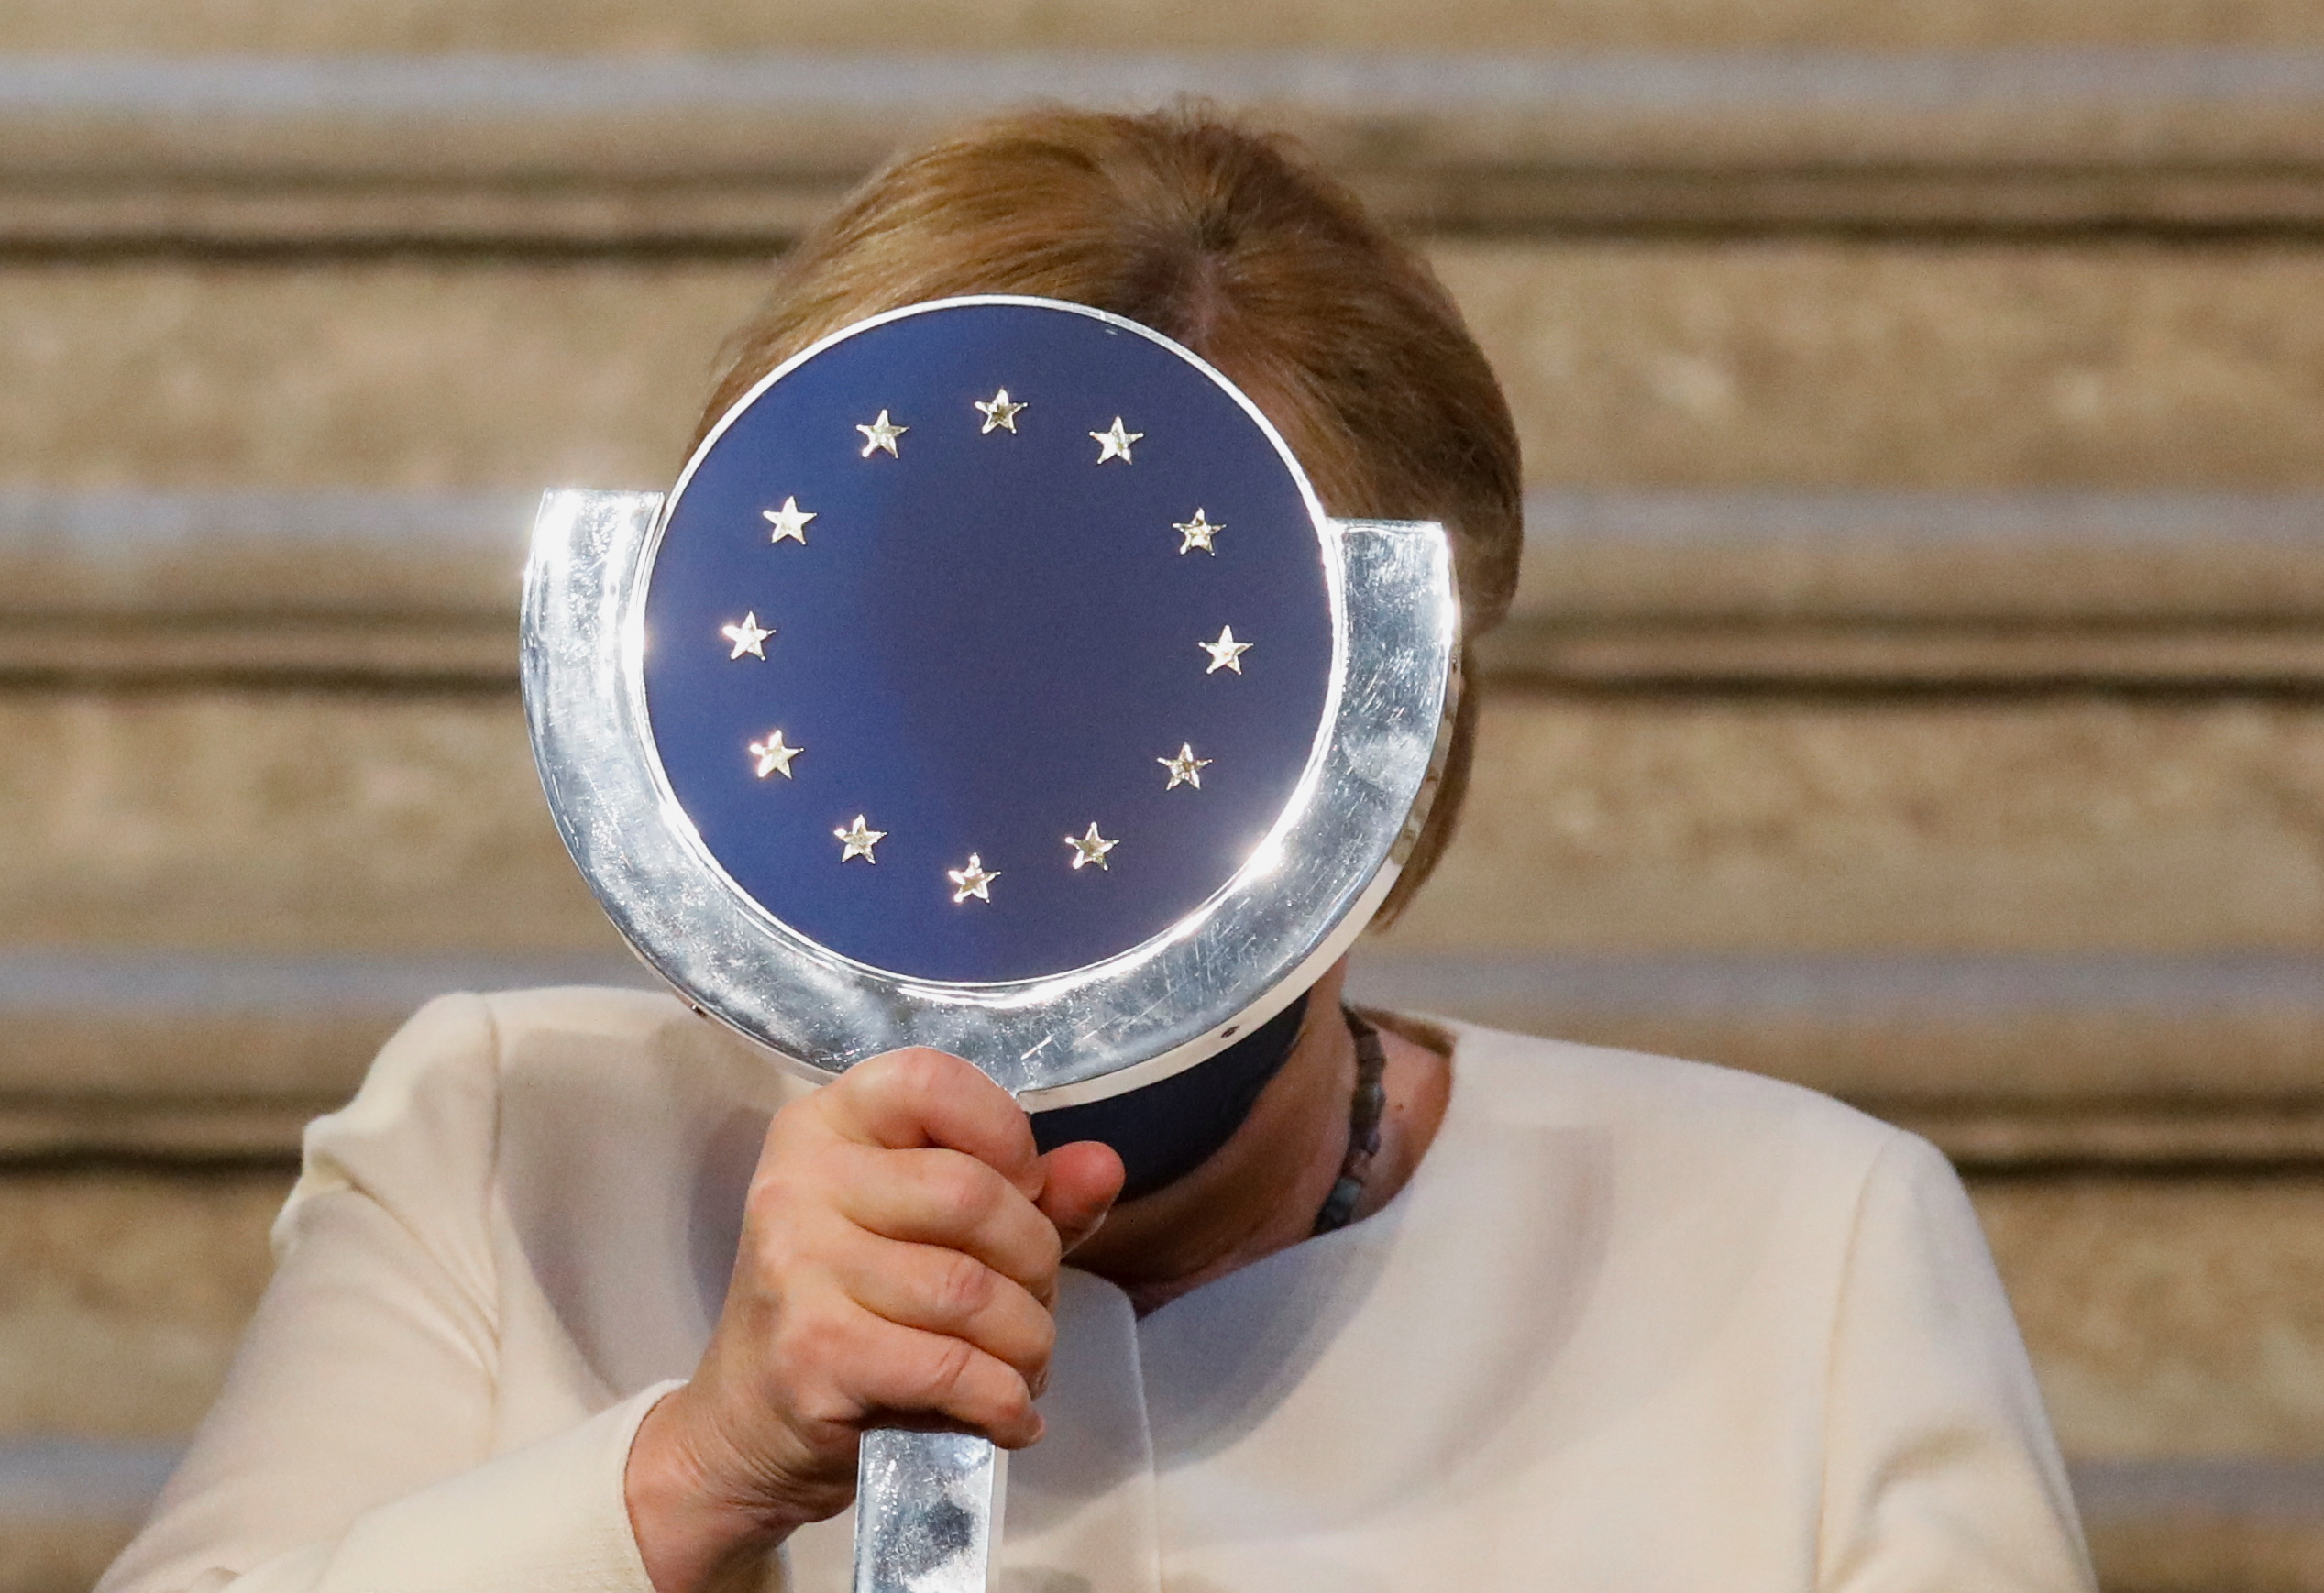 La canciller alemana Angela Merkel recibe el "Premio Europeo Carlos V" tras la ceremonia en el Monasterio de Yuste, en la región occidental española de Cáceres, el 14 de octubre de 2021. REUTERS / Susana Vera